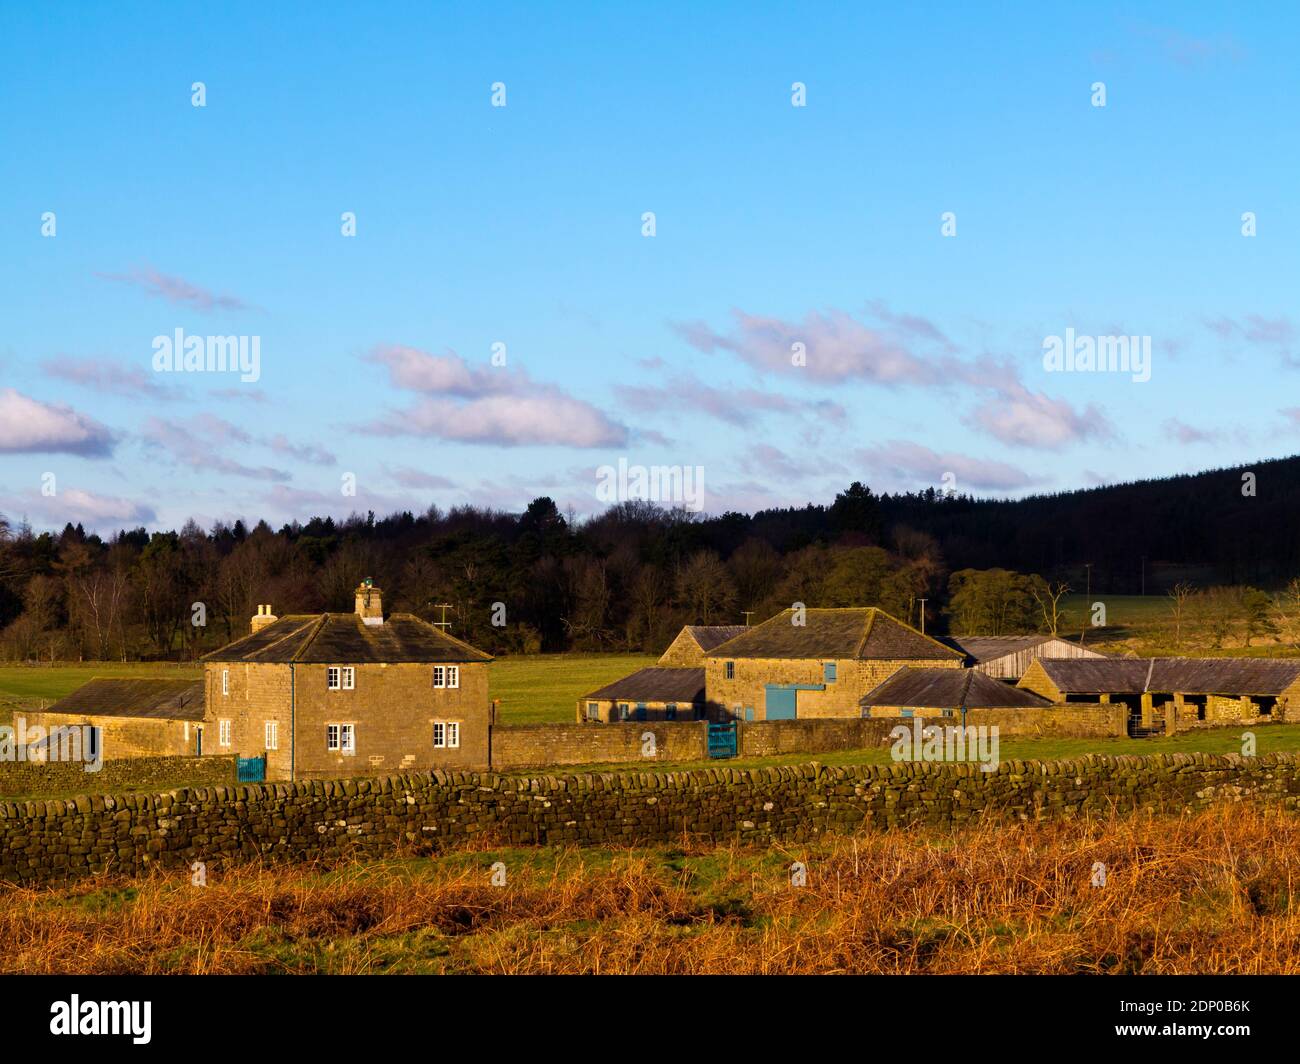 Edifici agricoli a Beeley Moor vicino a Bakewell nel Peak District National Park Derbyshire Inghilterra Regno Unito fotografato in inverno sole in gennaio. Foto Stock